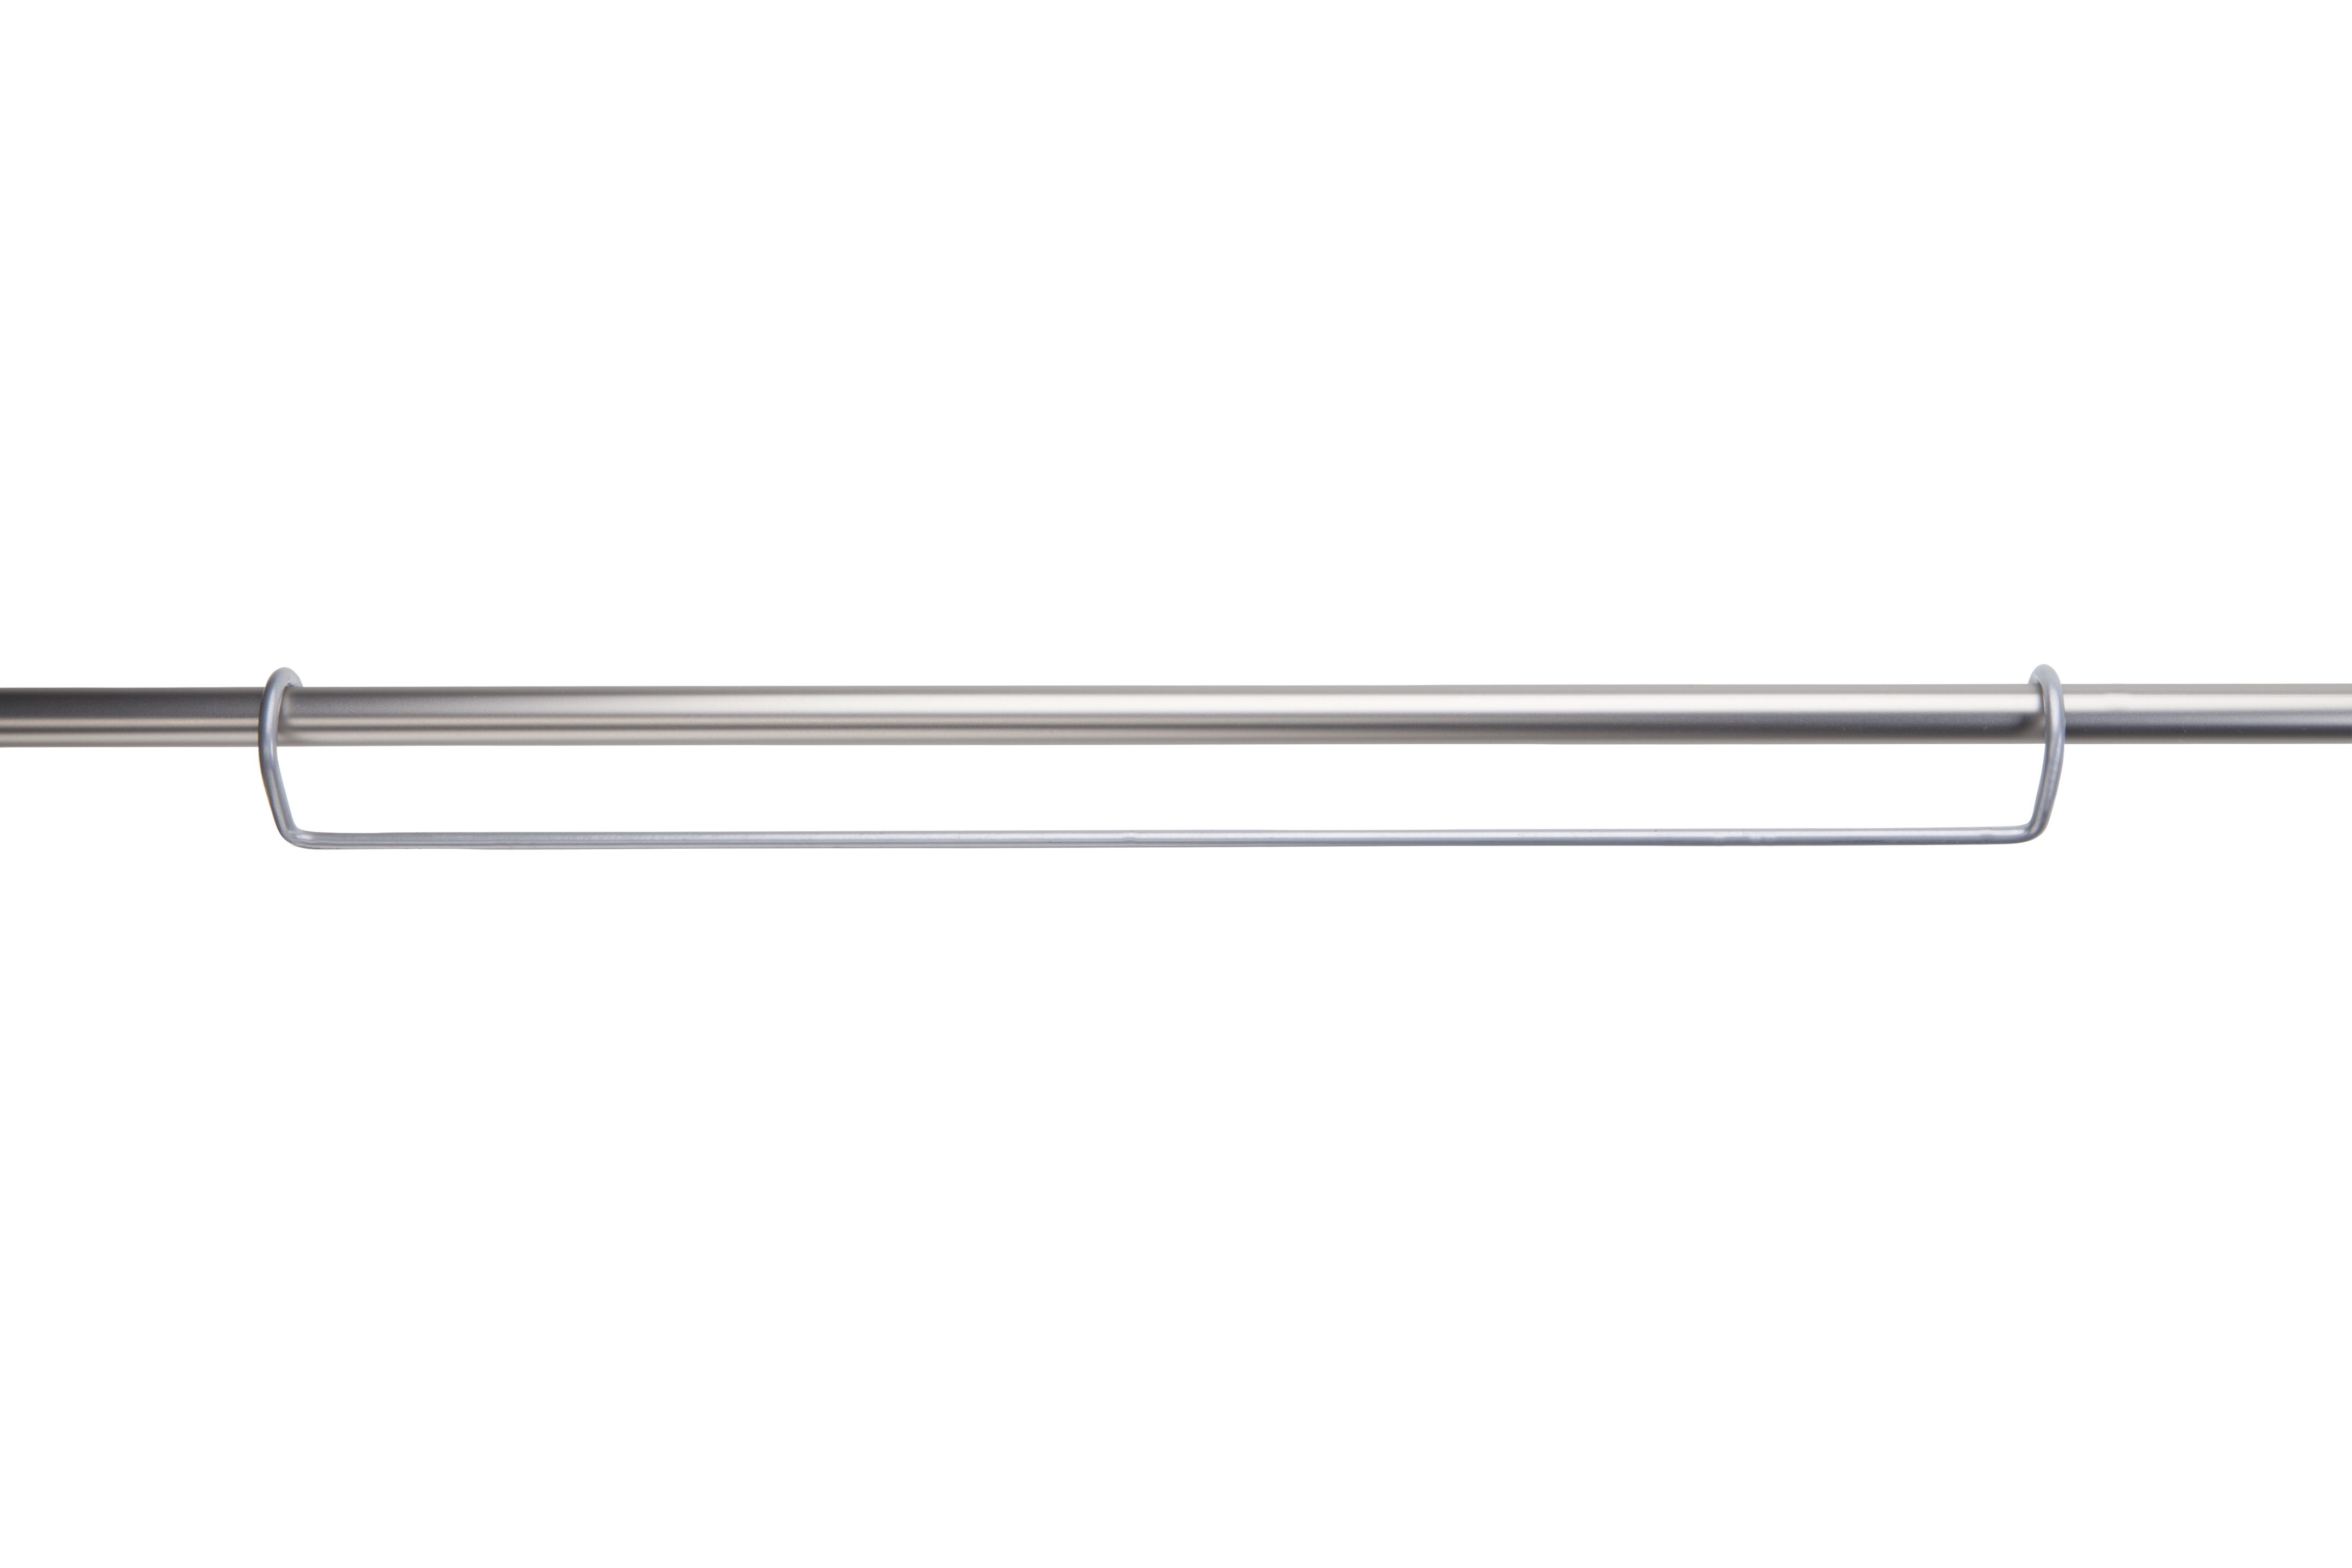 Paneelhänger für Rohre bis Ø 25 mm, Metall, 2 Stück-